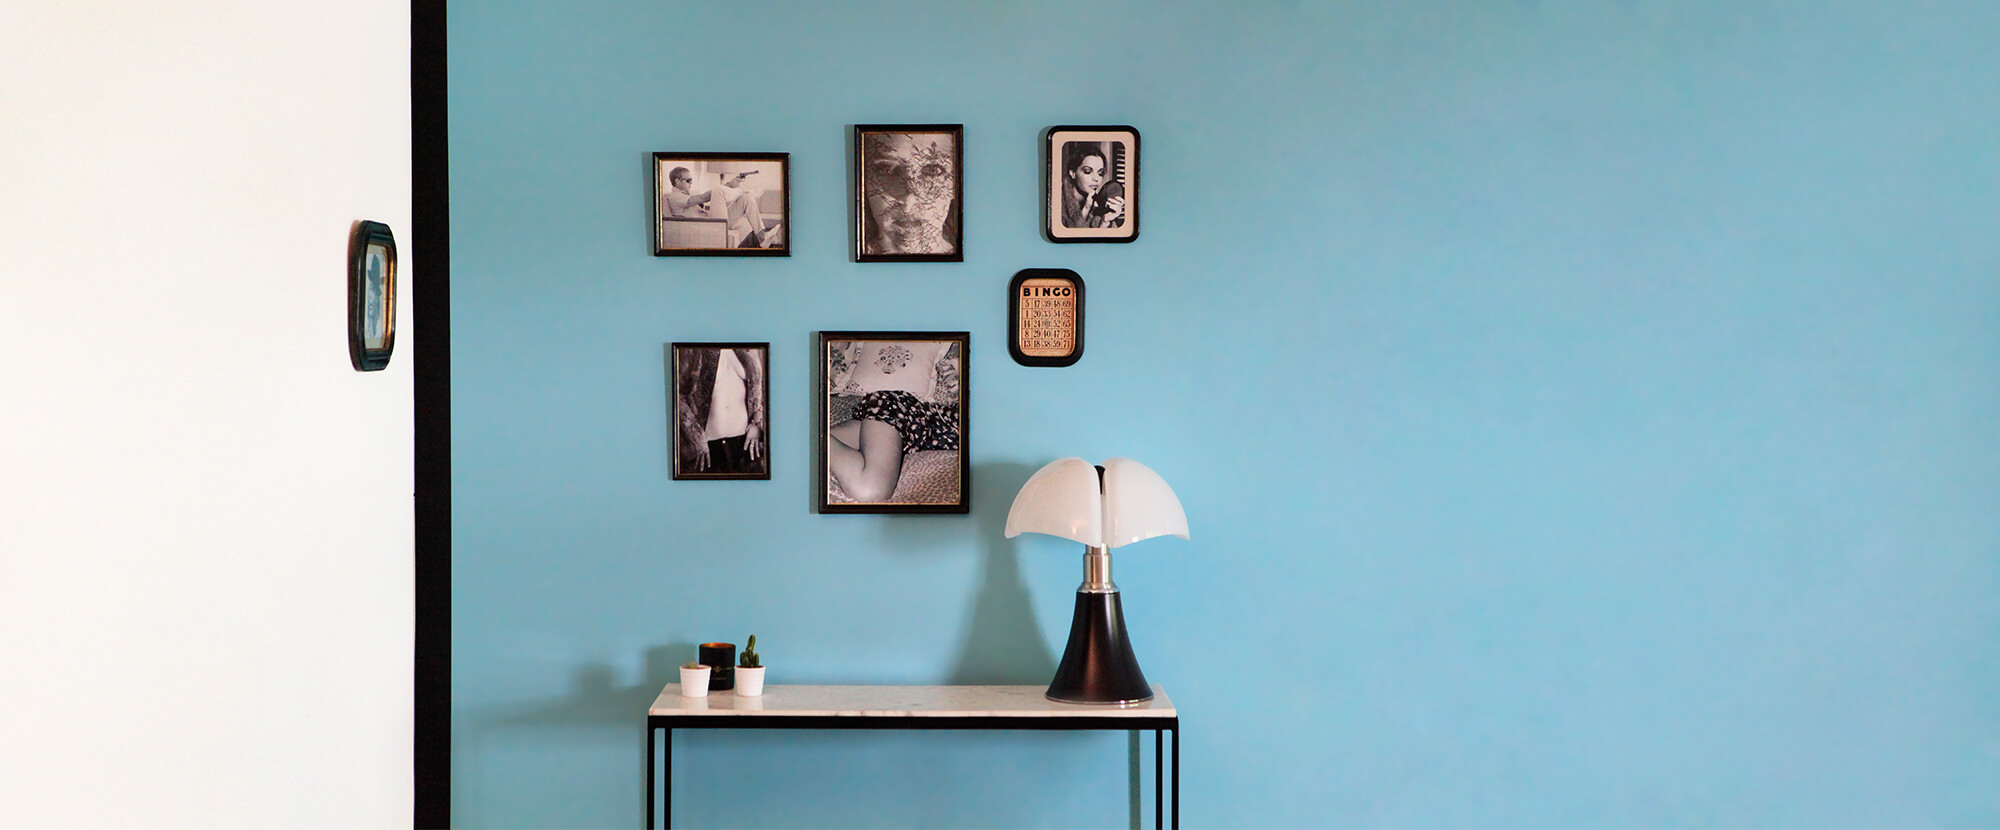 Décoration d'intérieur, Réalisation K Touch - Disposition de cadres photos vintages, au dessus d'une table, sur un mur bleu